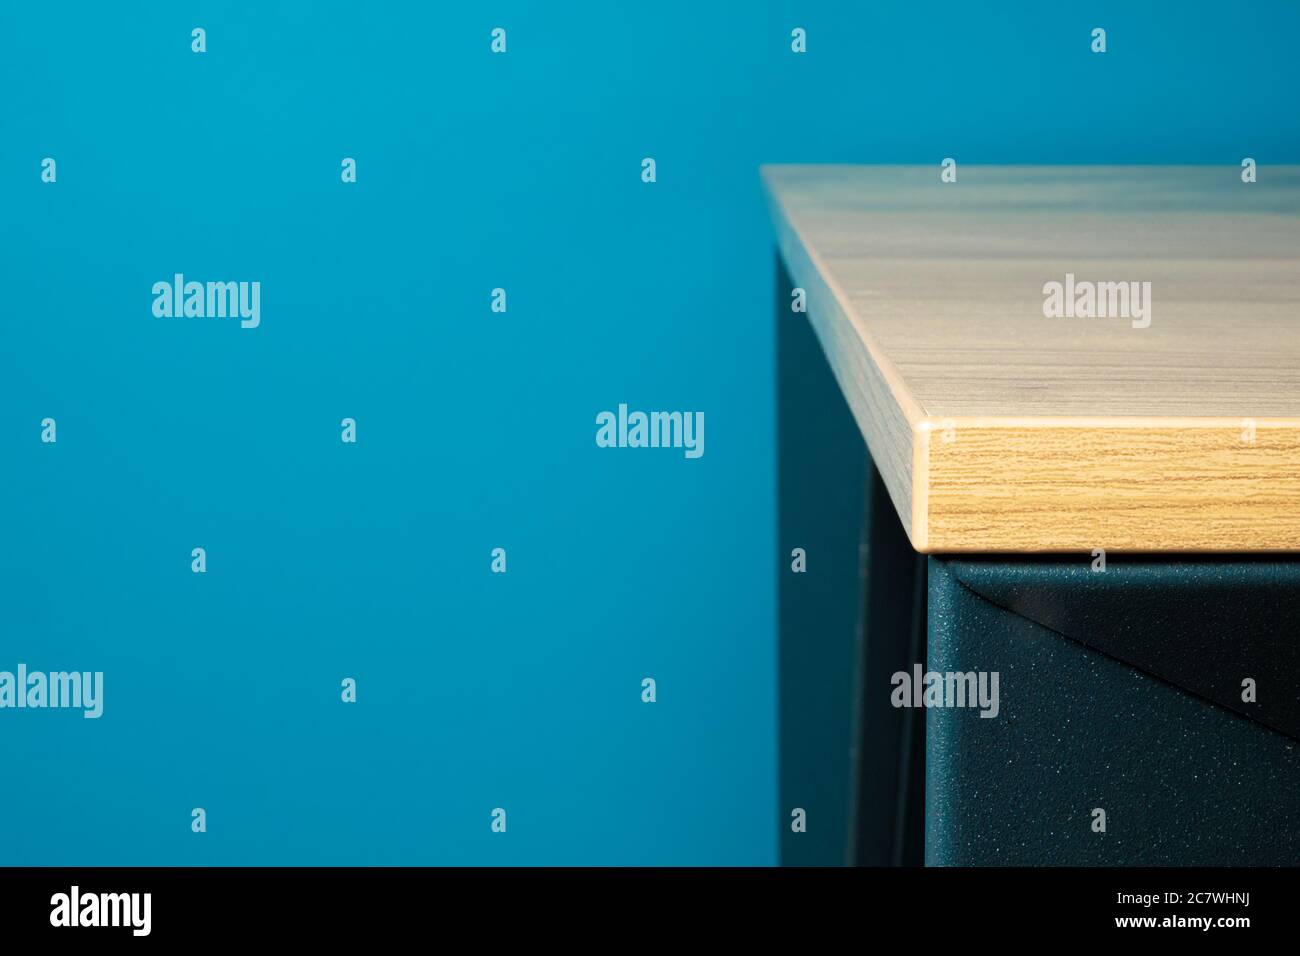 Gros plan d'un coin de table mobilier en bois massif avec fond bleu Banque D'Images